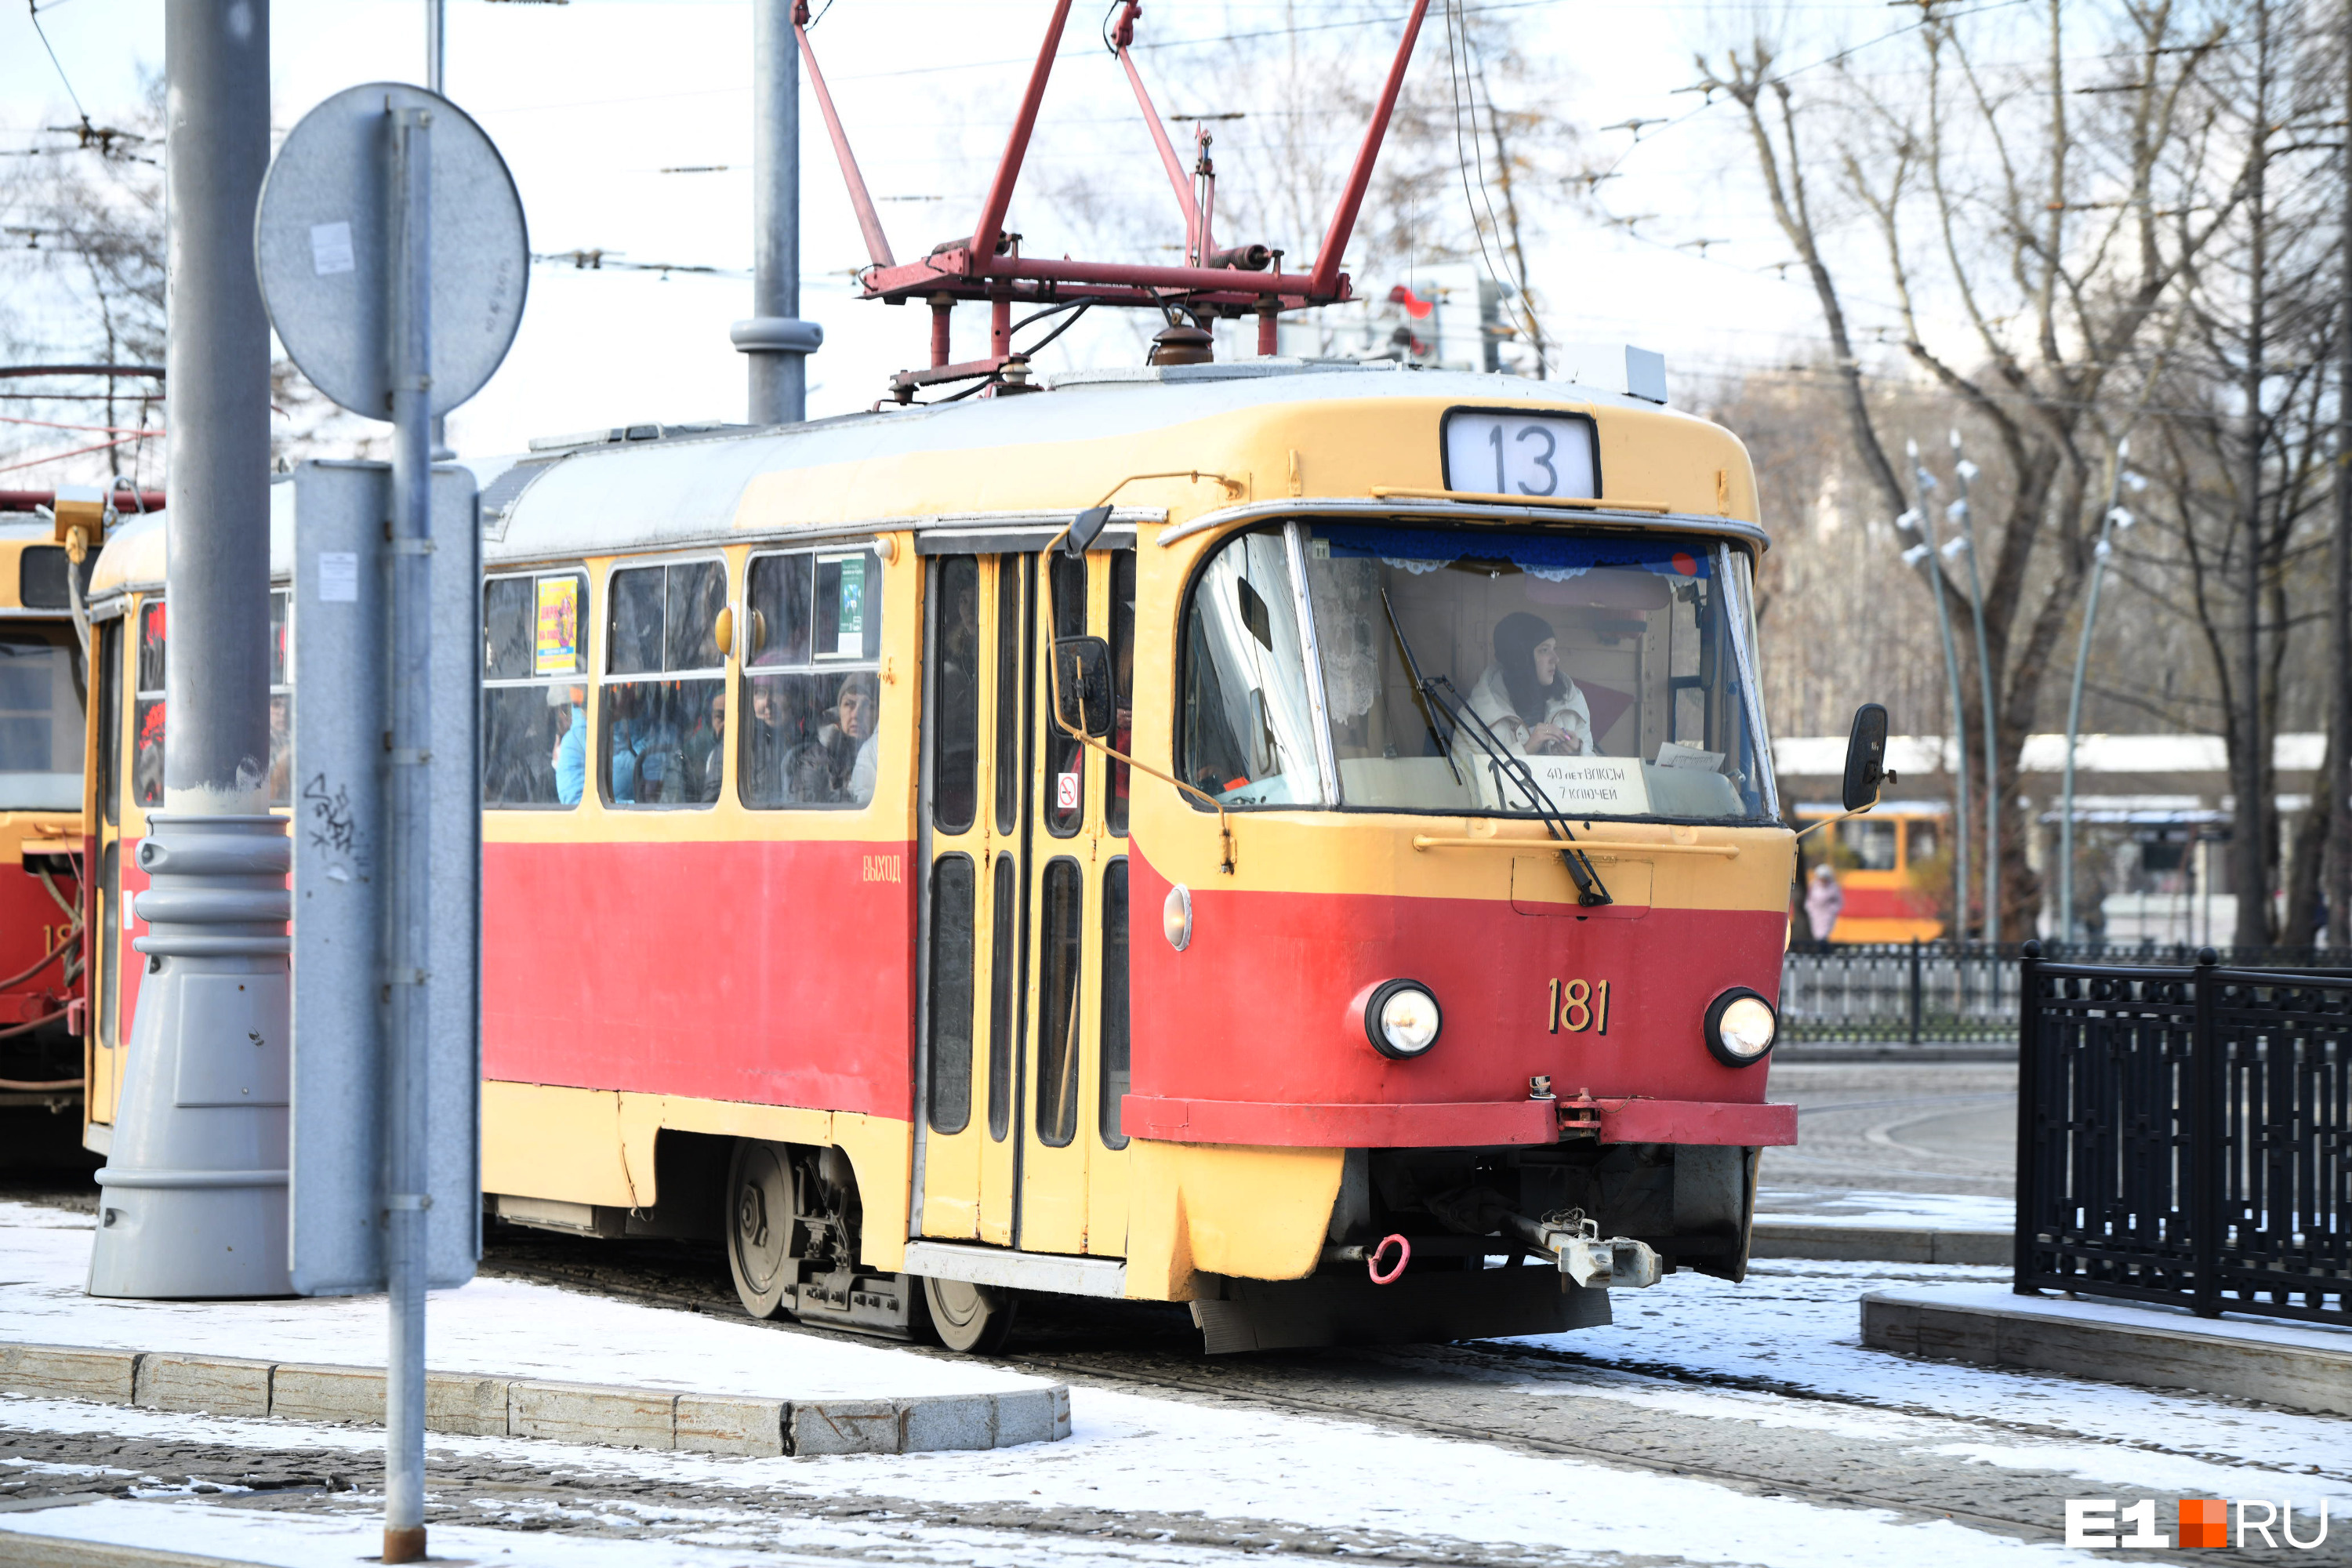 Екатеринбуржец пожаловался властям на жуткие интервалы движения трамваев. Что ему ответили